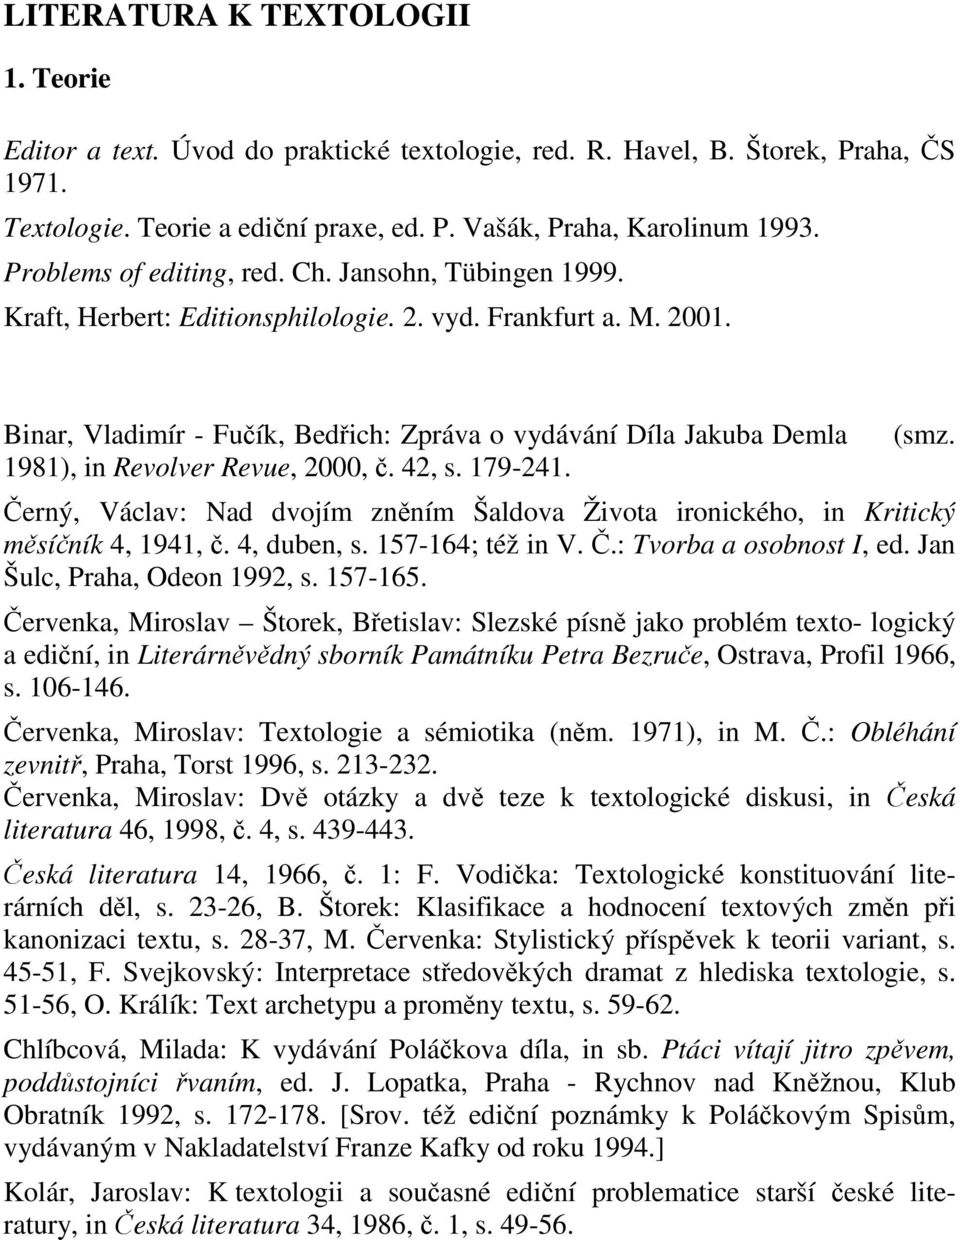 Binar, Vladimír - Fuík, Bedich: Zpráva o vydávání Díla Jakuba Demla 1981), in Revolver Revue, 2000,. 42, s. 179-241. (smz.